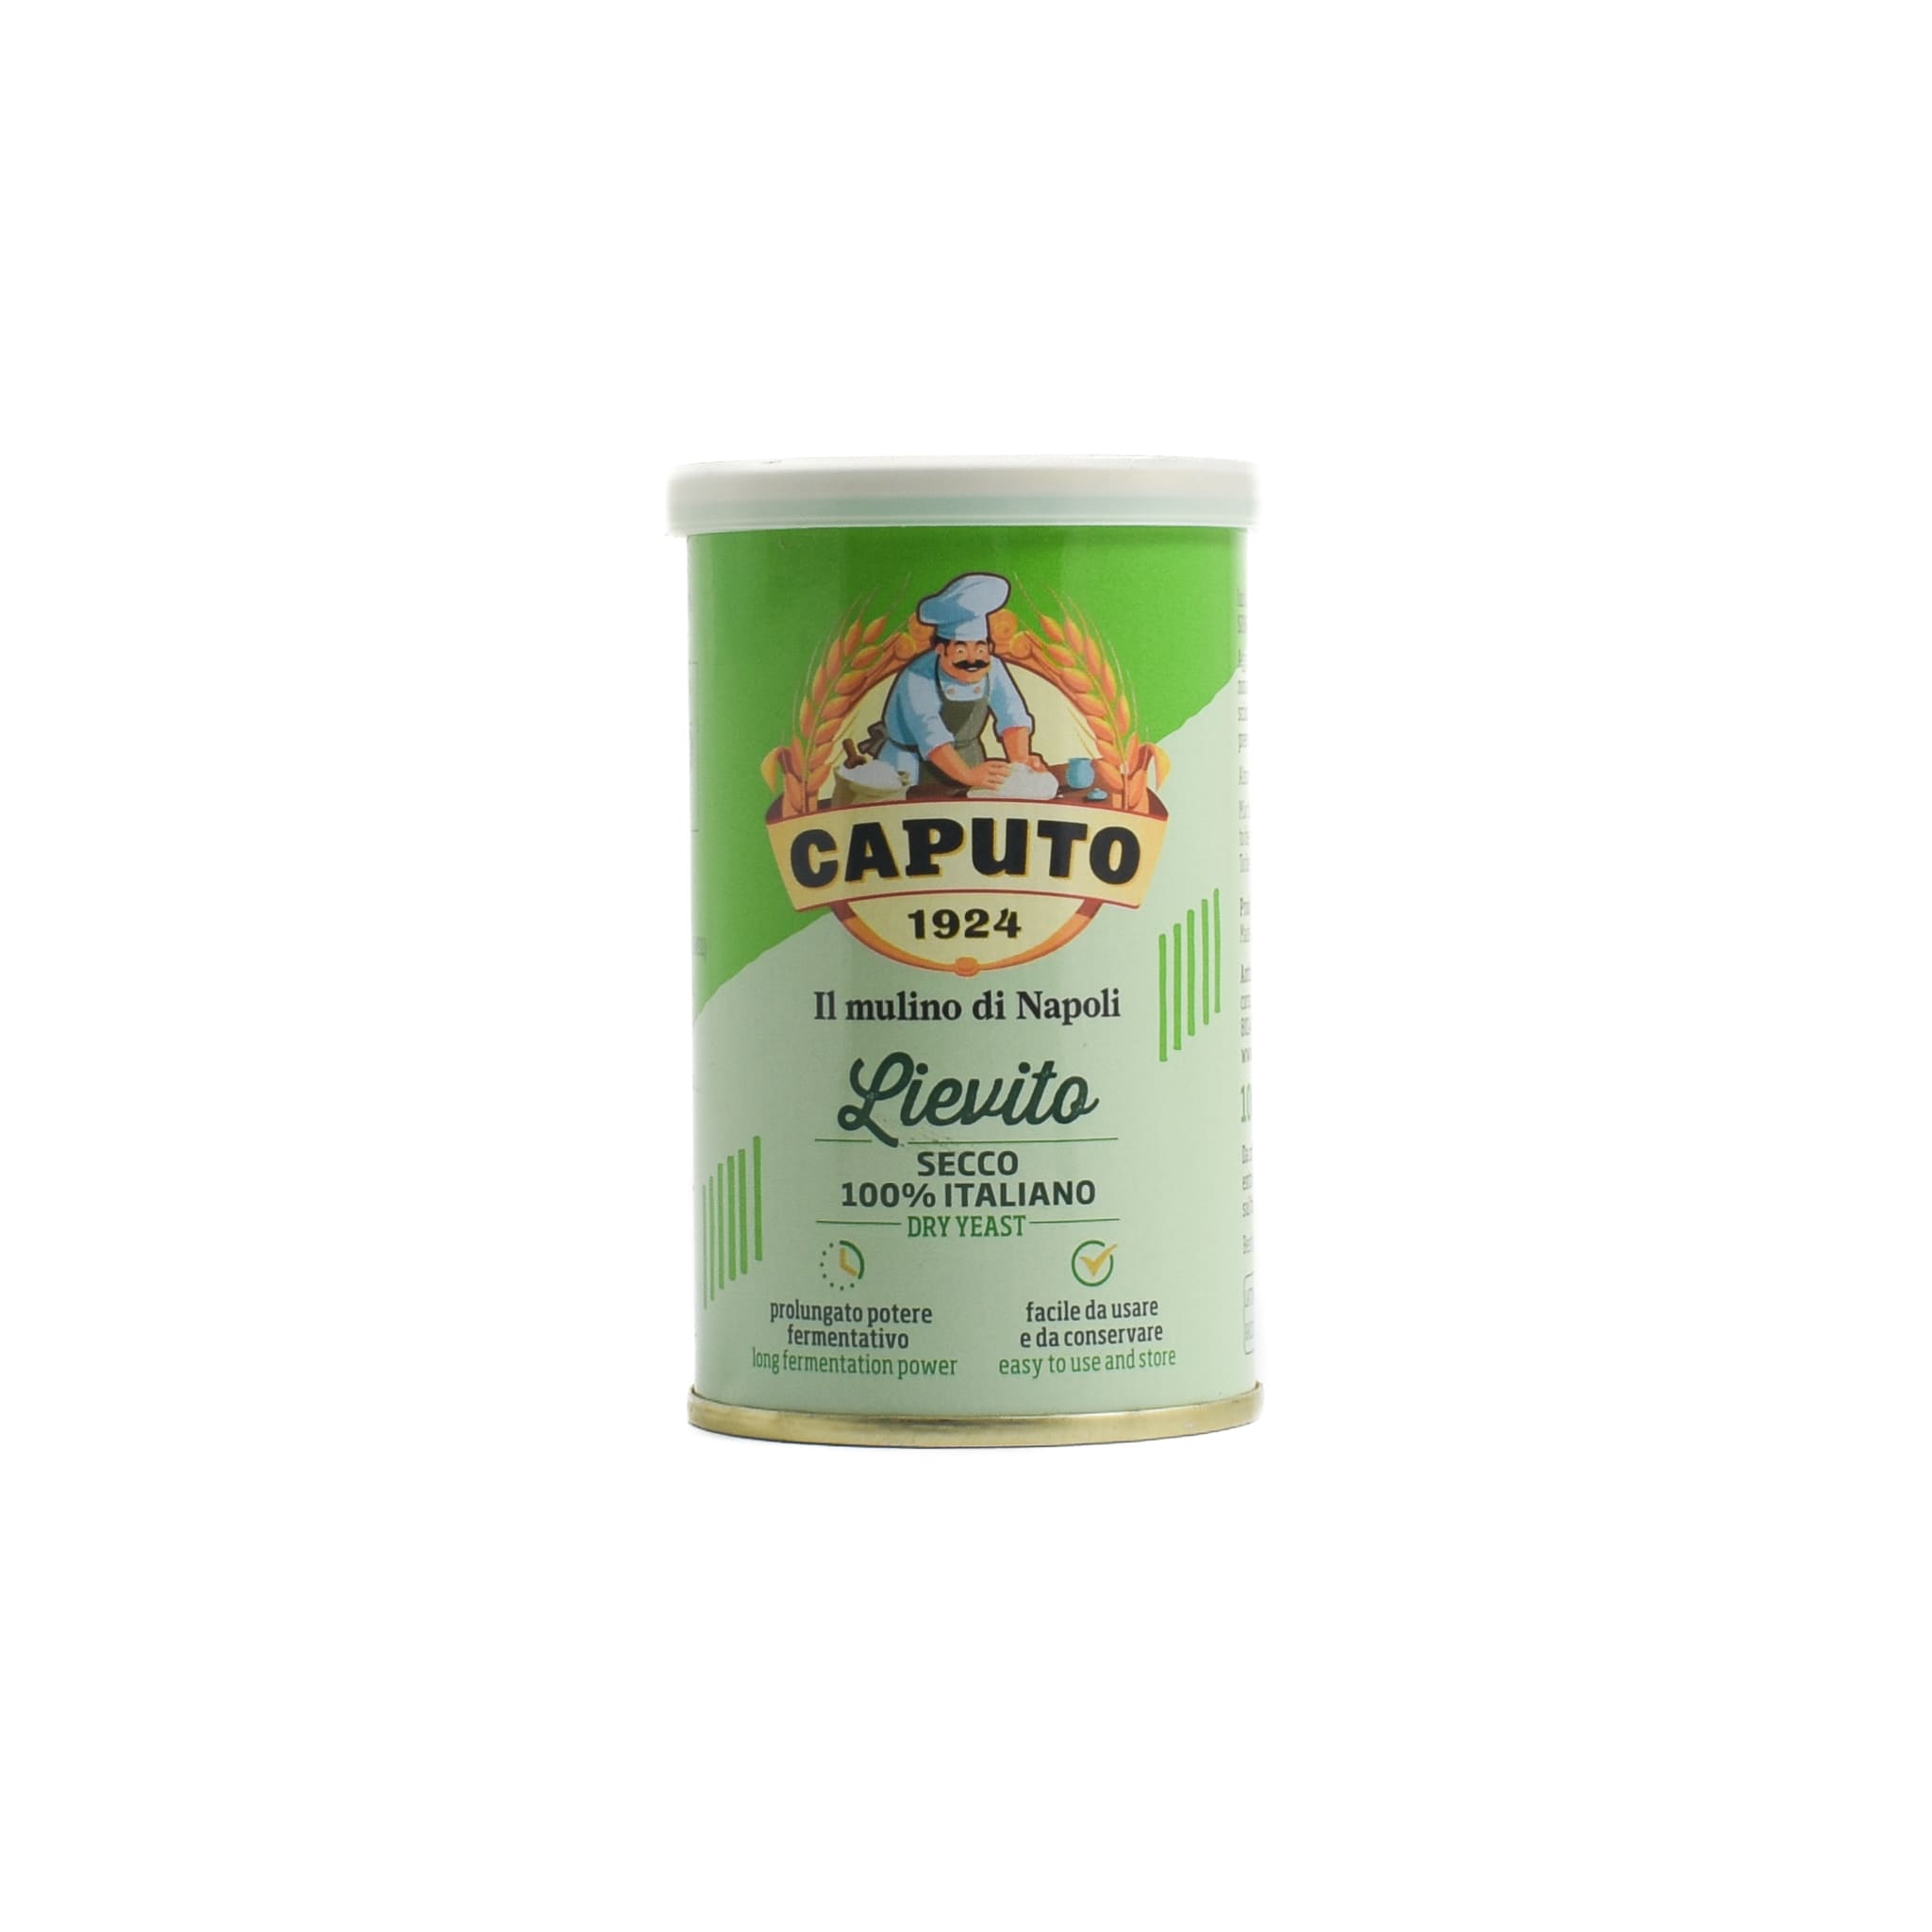 Caputo Dry Yeast in Tin, 100g